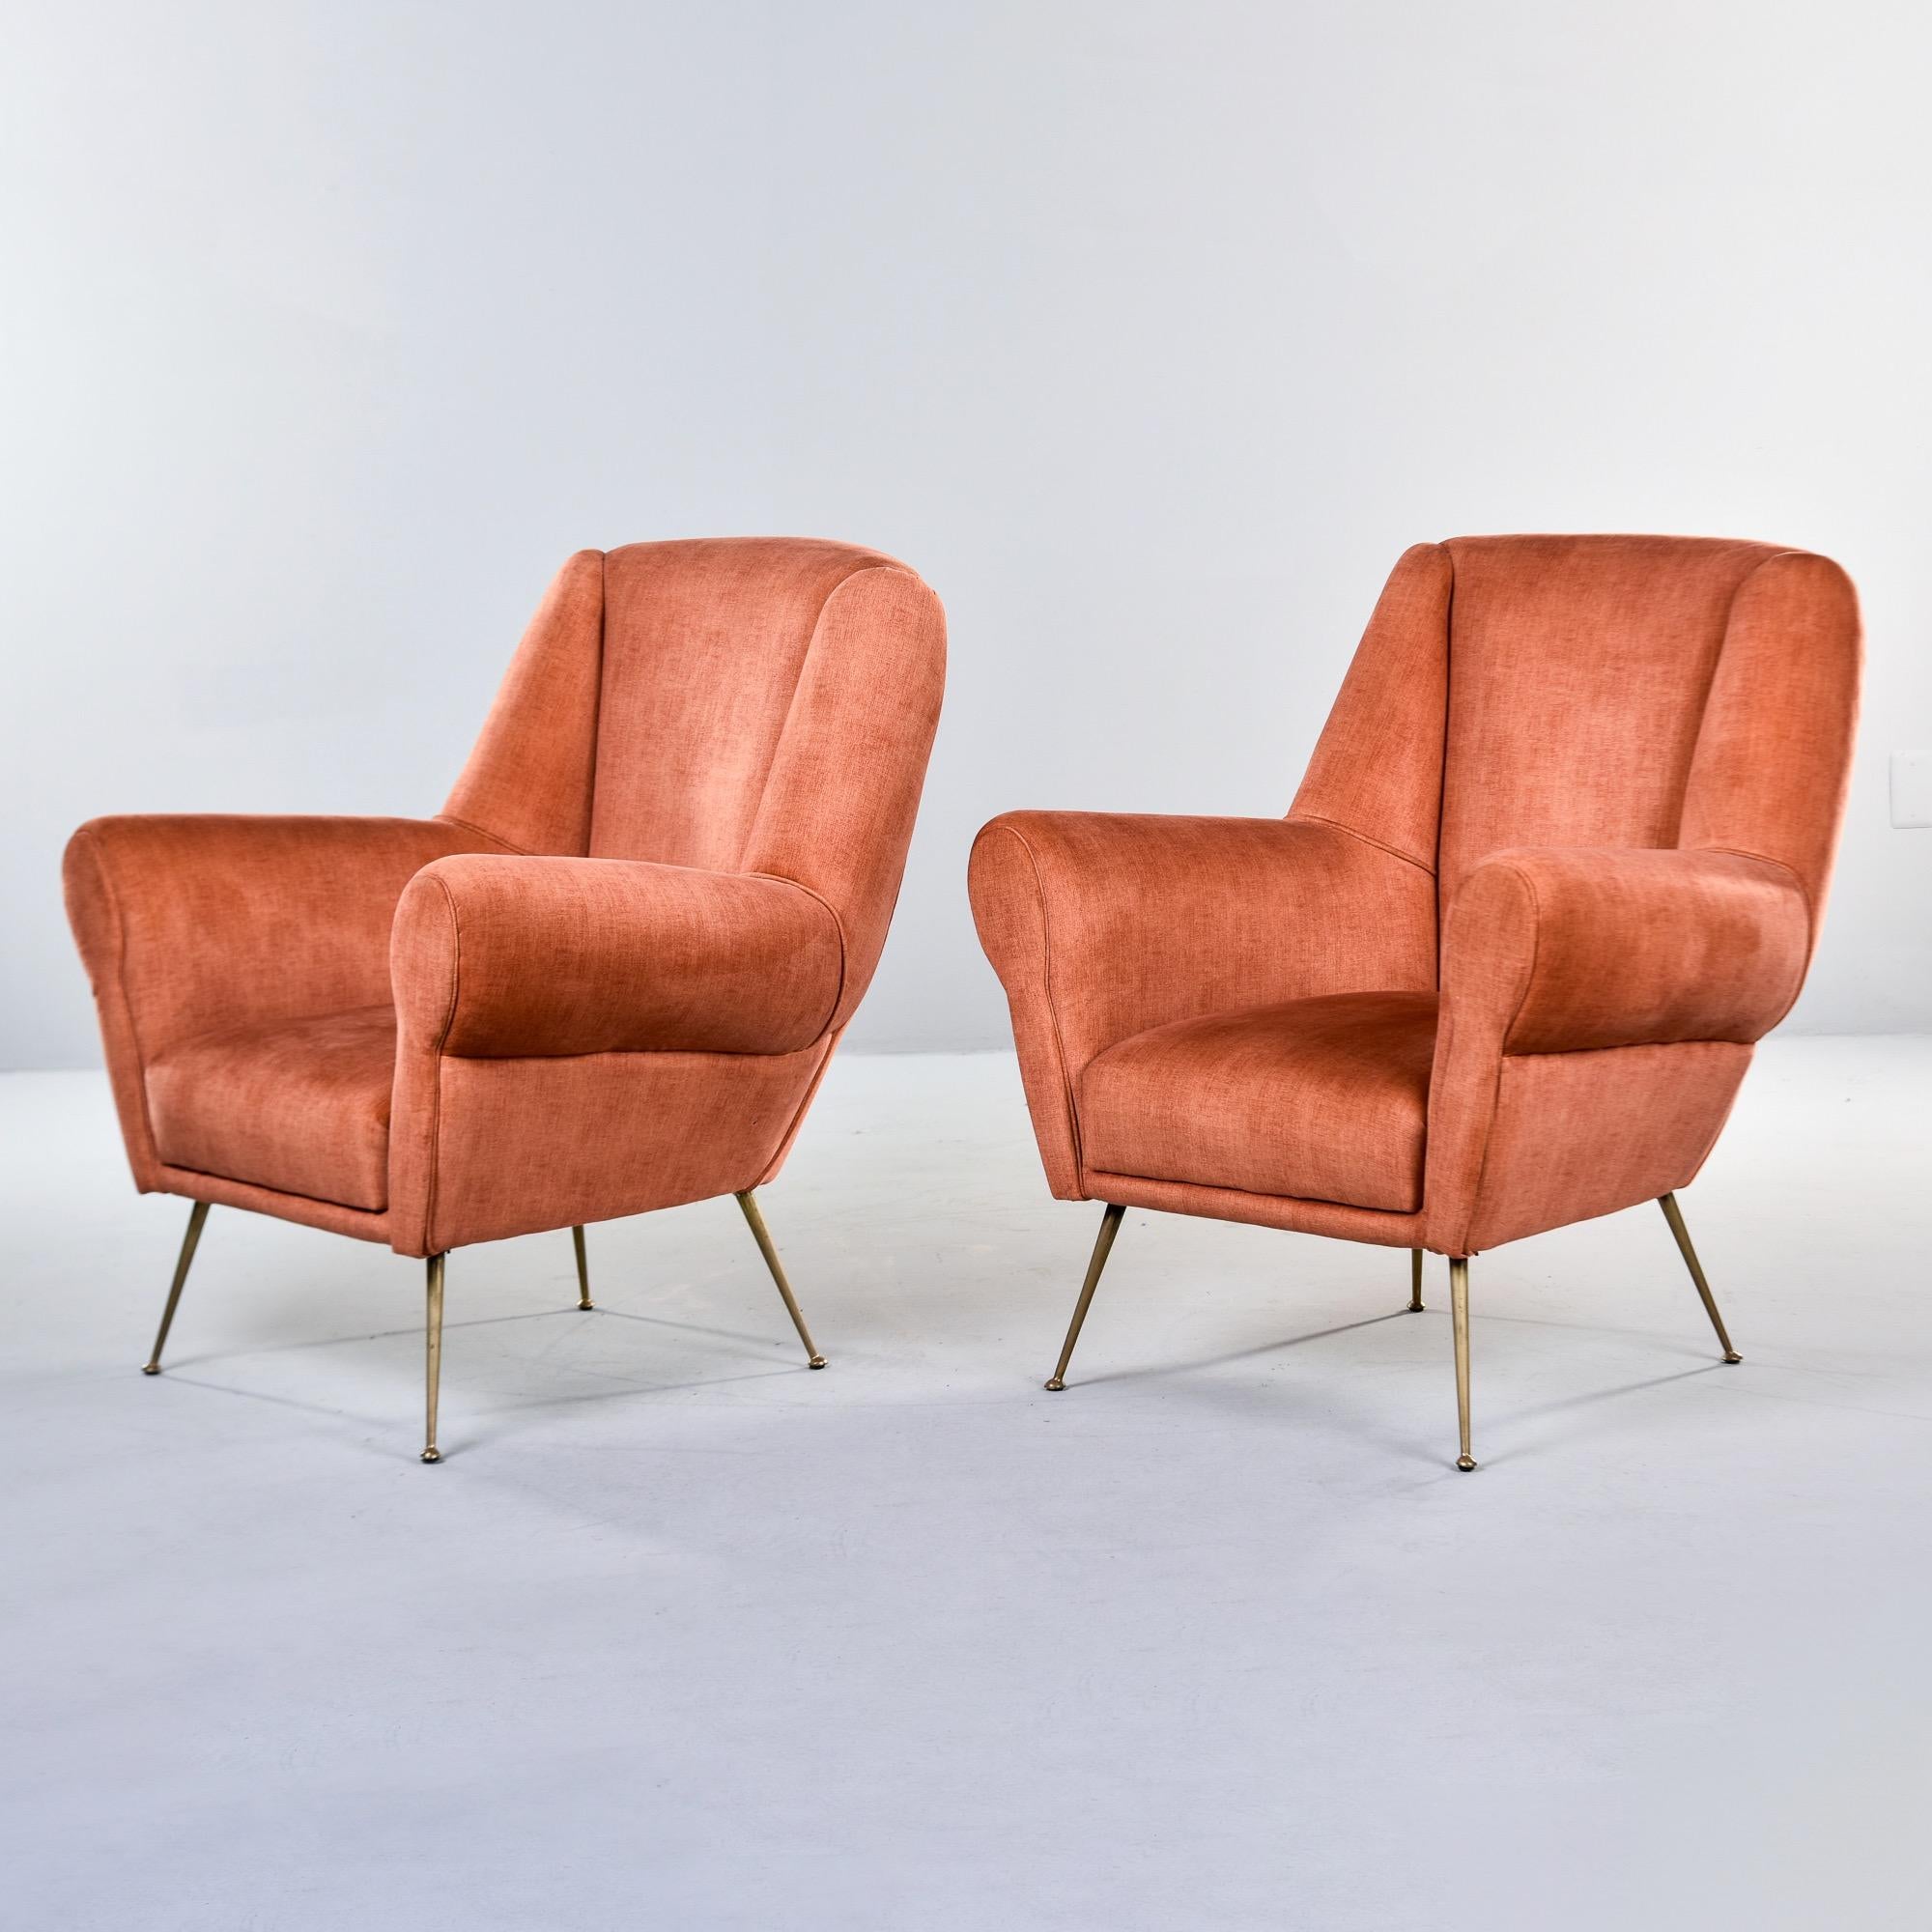 Dieses in Italien gefundene Paar gepolsterter Lounge-Sessel stammt aus den 1950er Jahren. Diese Stühle haben eine neue Polsterung aus dunklem apricotfarbenem Chenille-Samt, hohe Rückenlehnen, gerollte Armlehnen und schlanke Beine und Füße aus